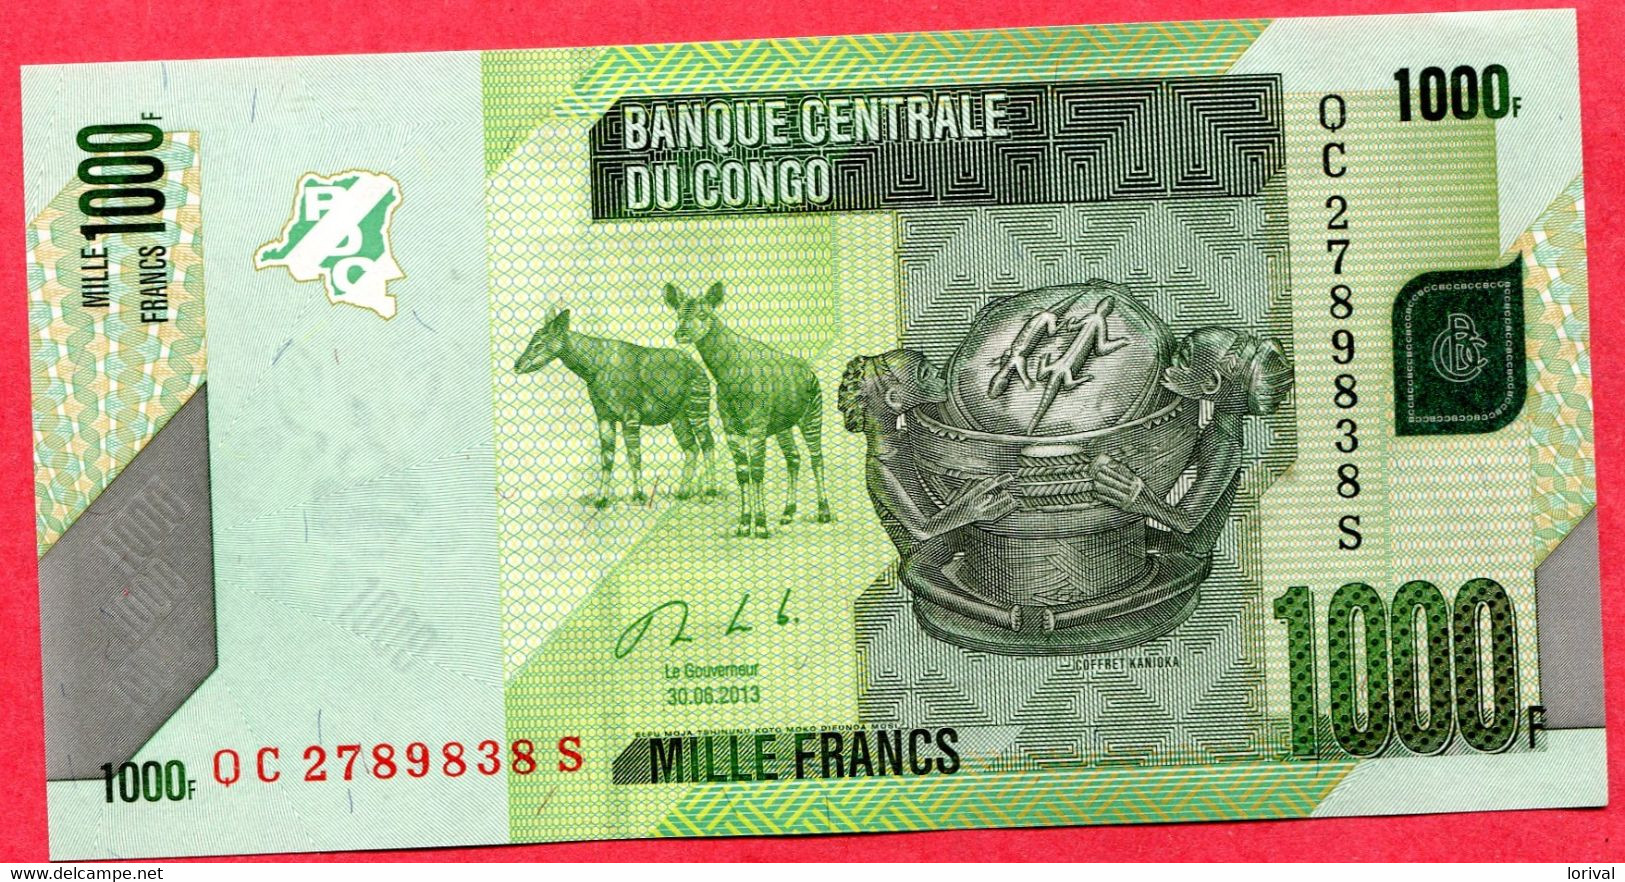 1000 Francs 2013 Neuf 3 Euros - Republic Of Congo (Congo-Brazzaville)